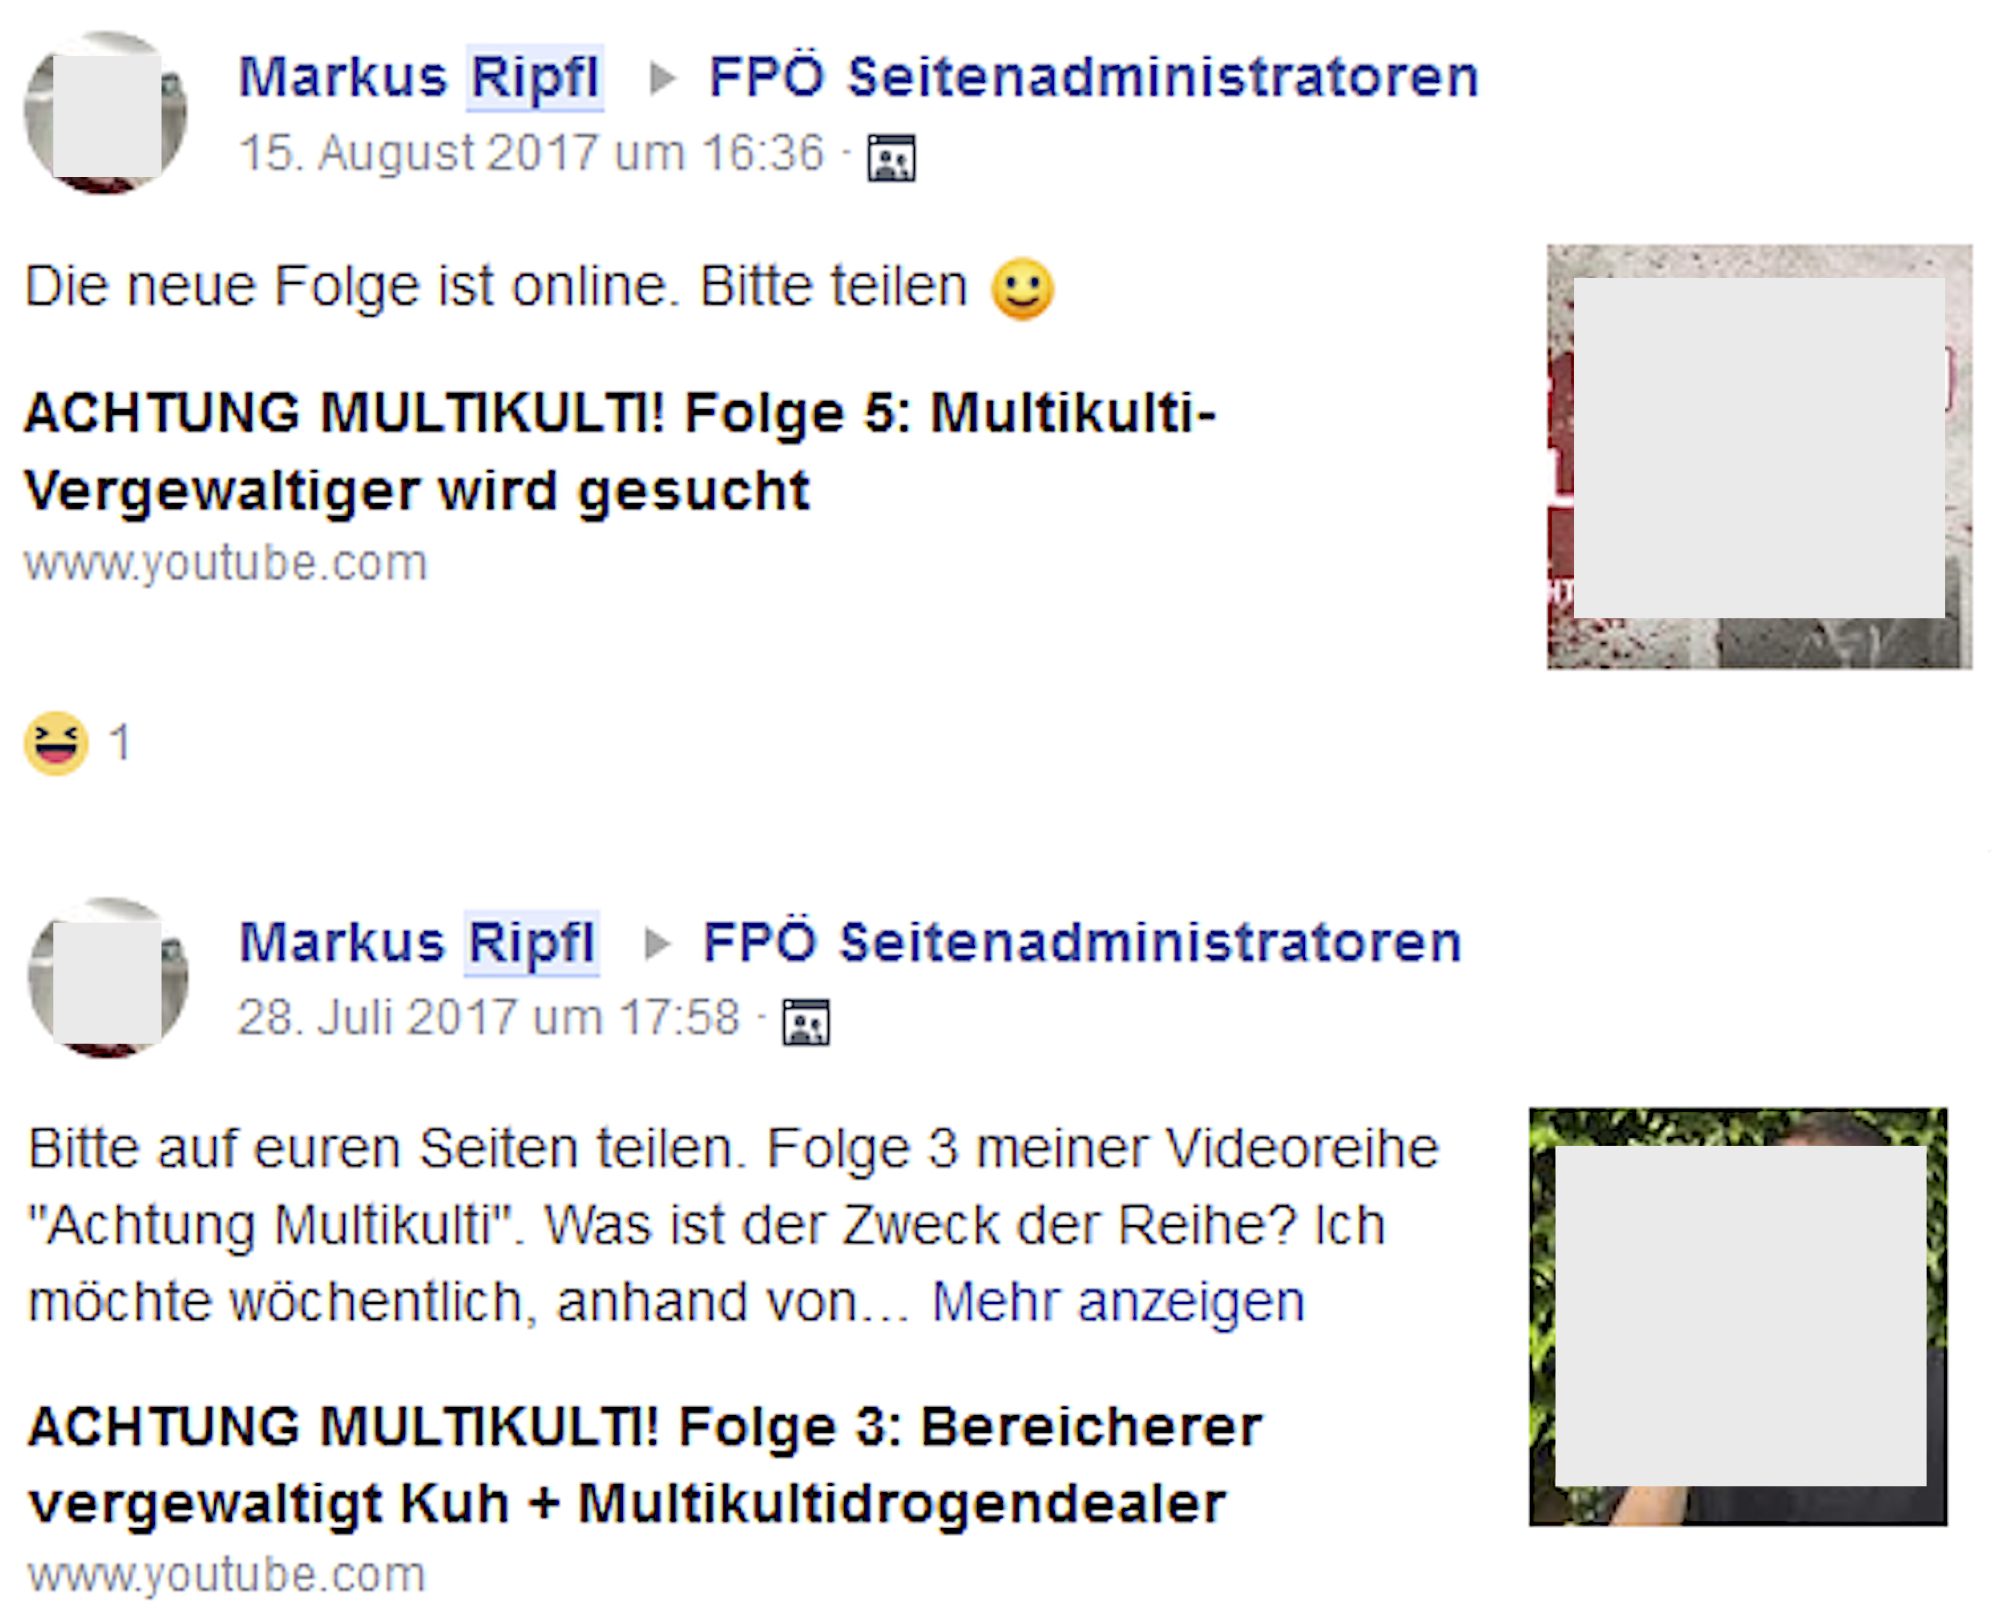 Markus Ripfl wirbt in der Gruppe "FPÖ Seitenadminitratoren" für seinen hetzerischen Youtube-Kanal